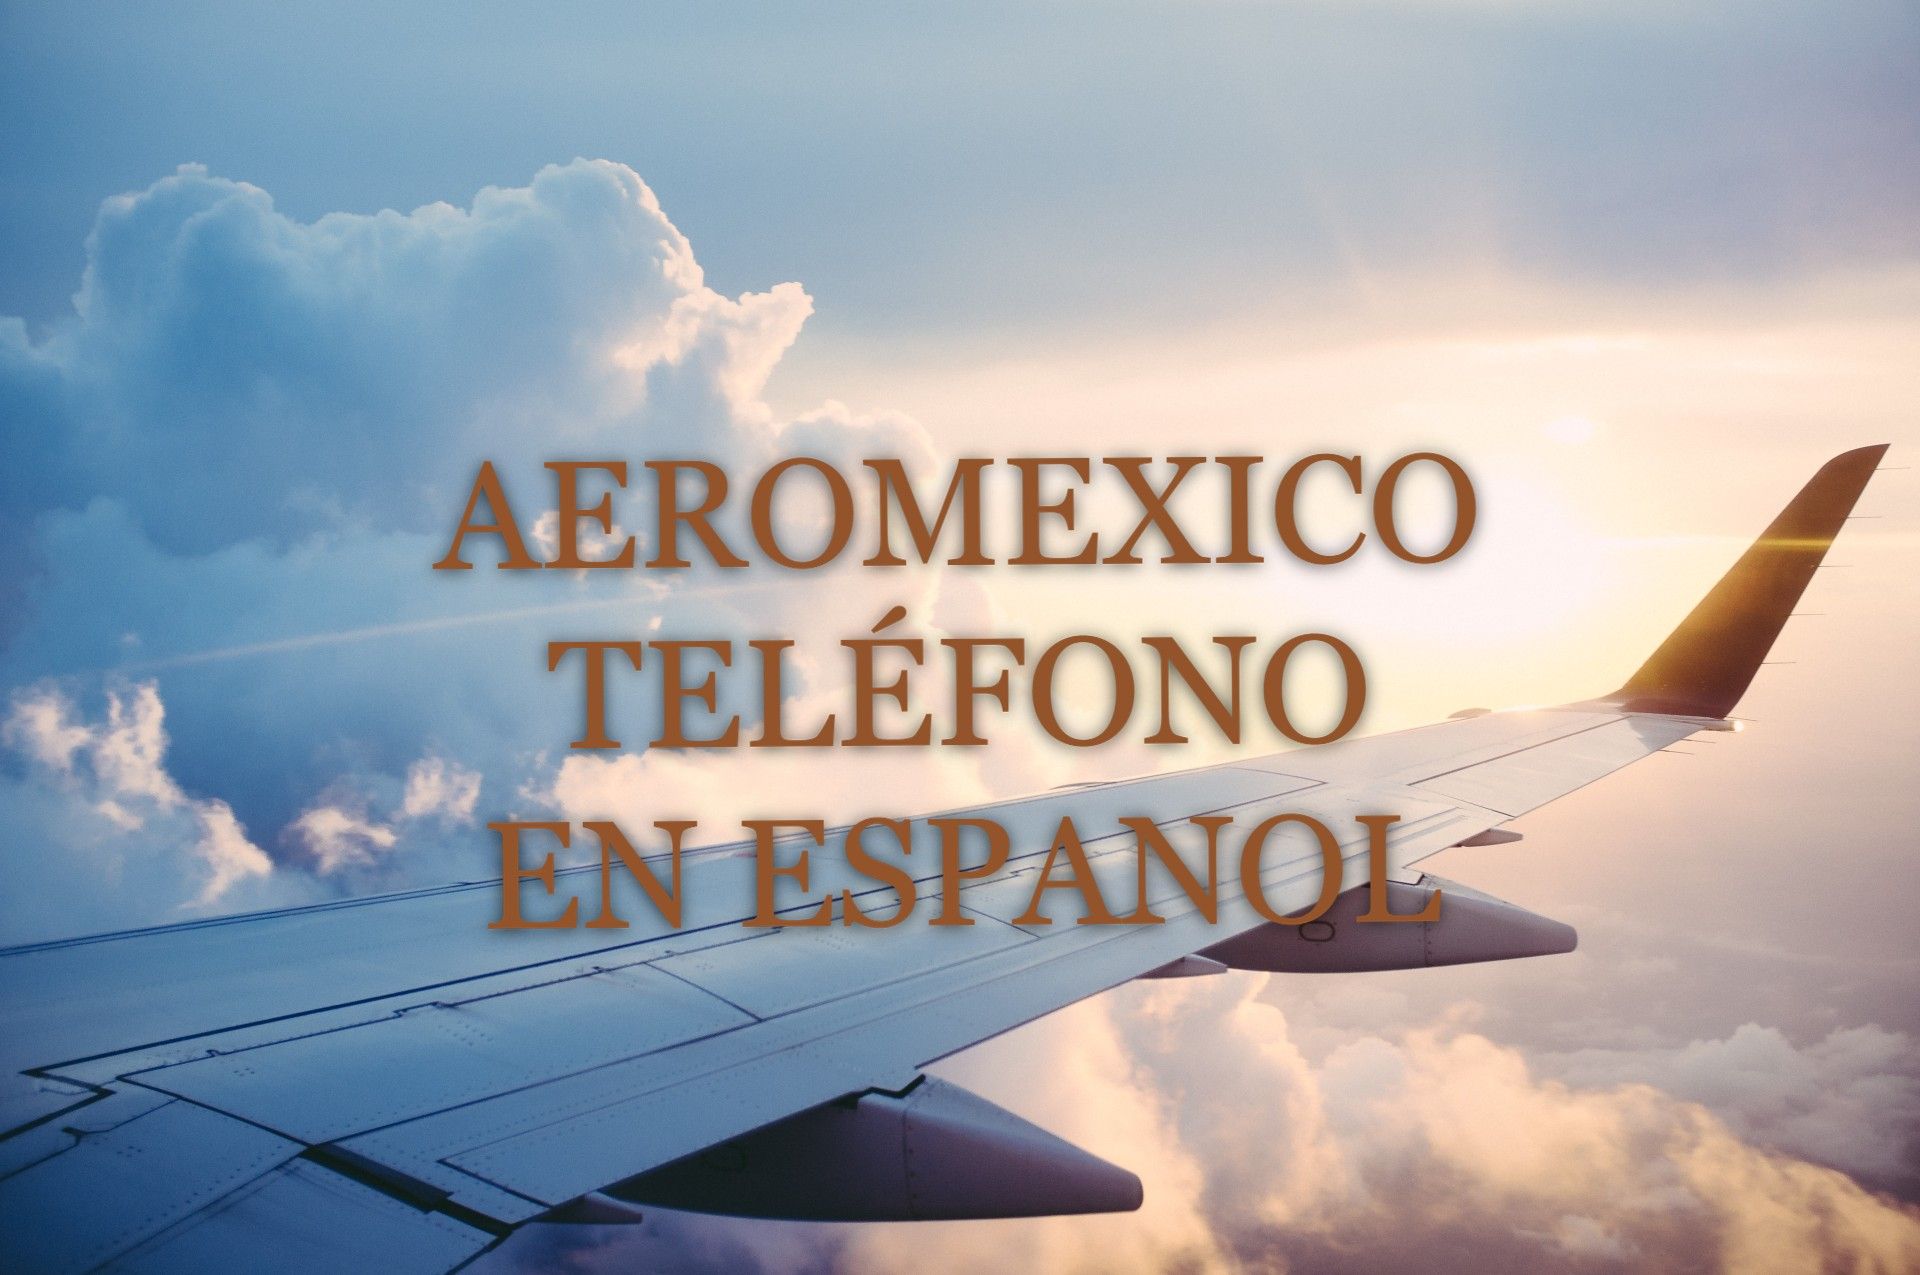 ¿Cómo llamar a Aeroméxico desde España?